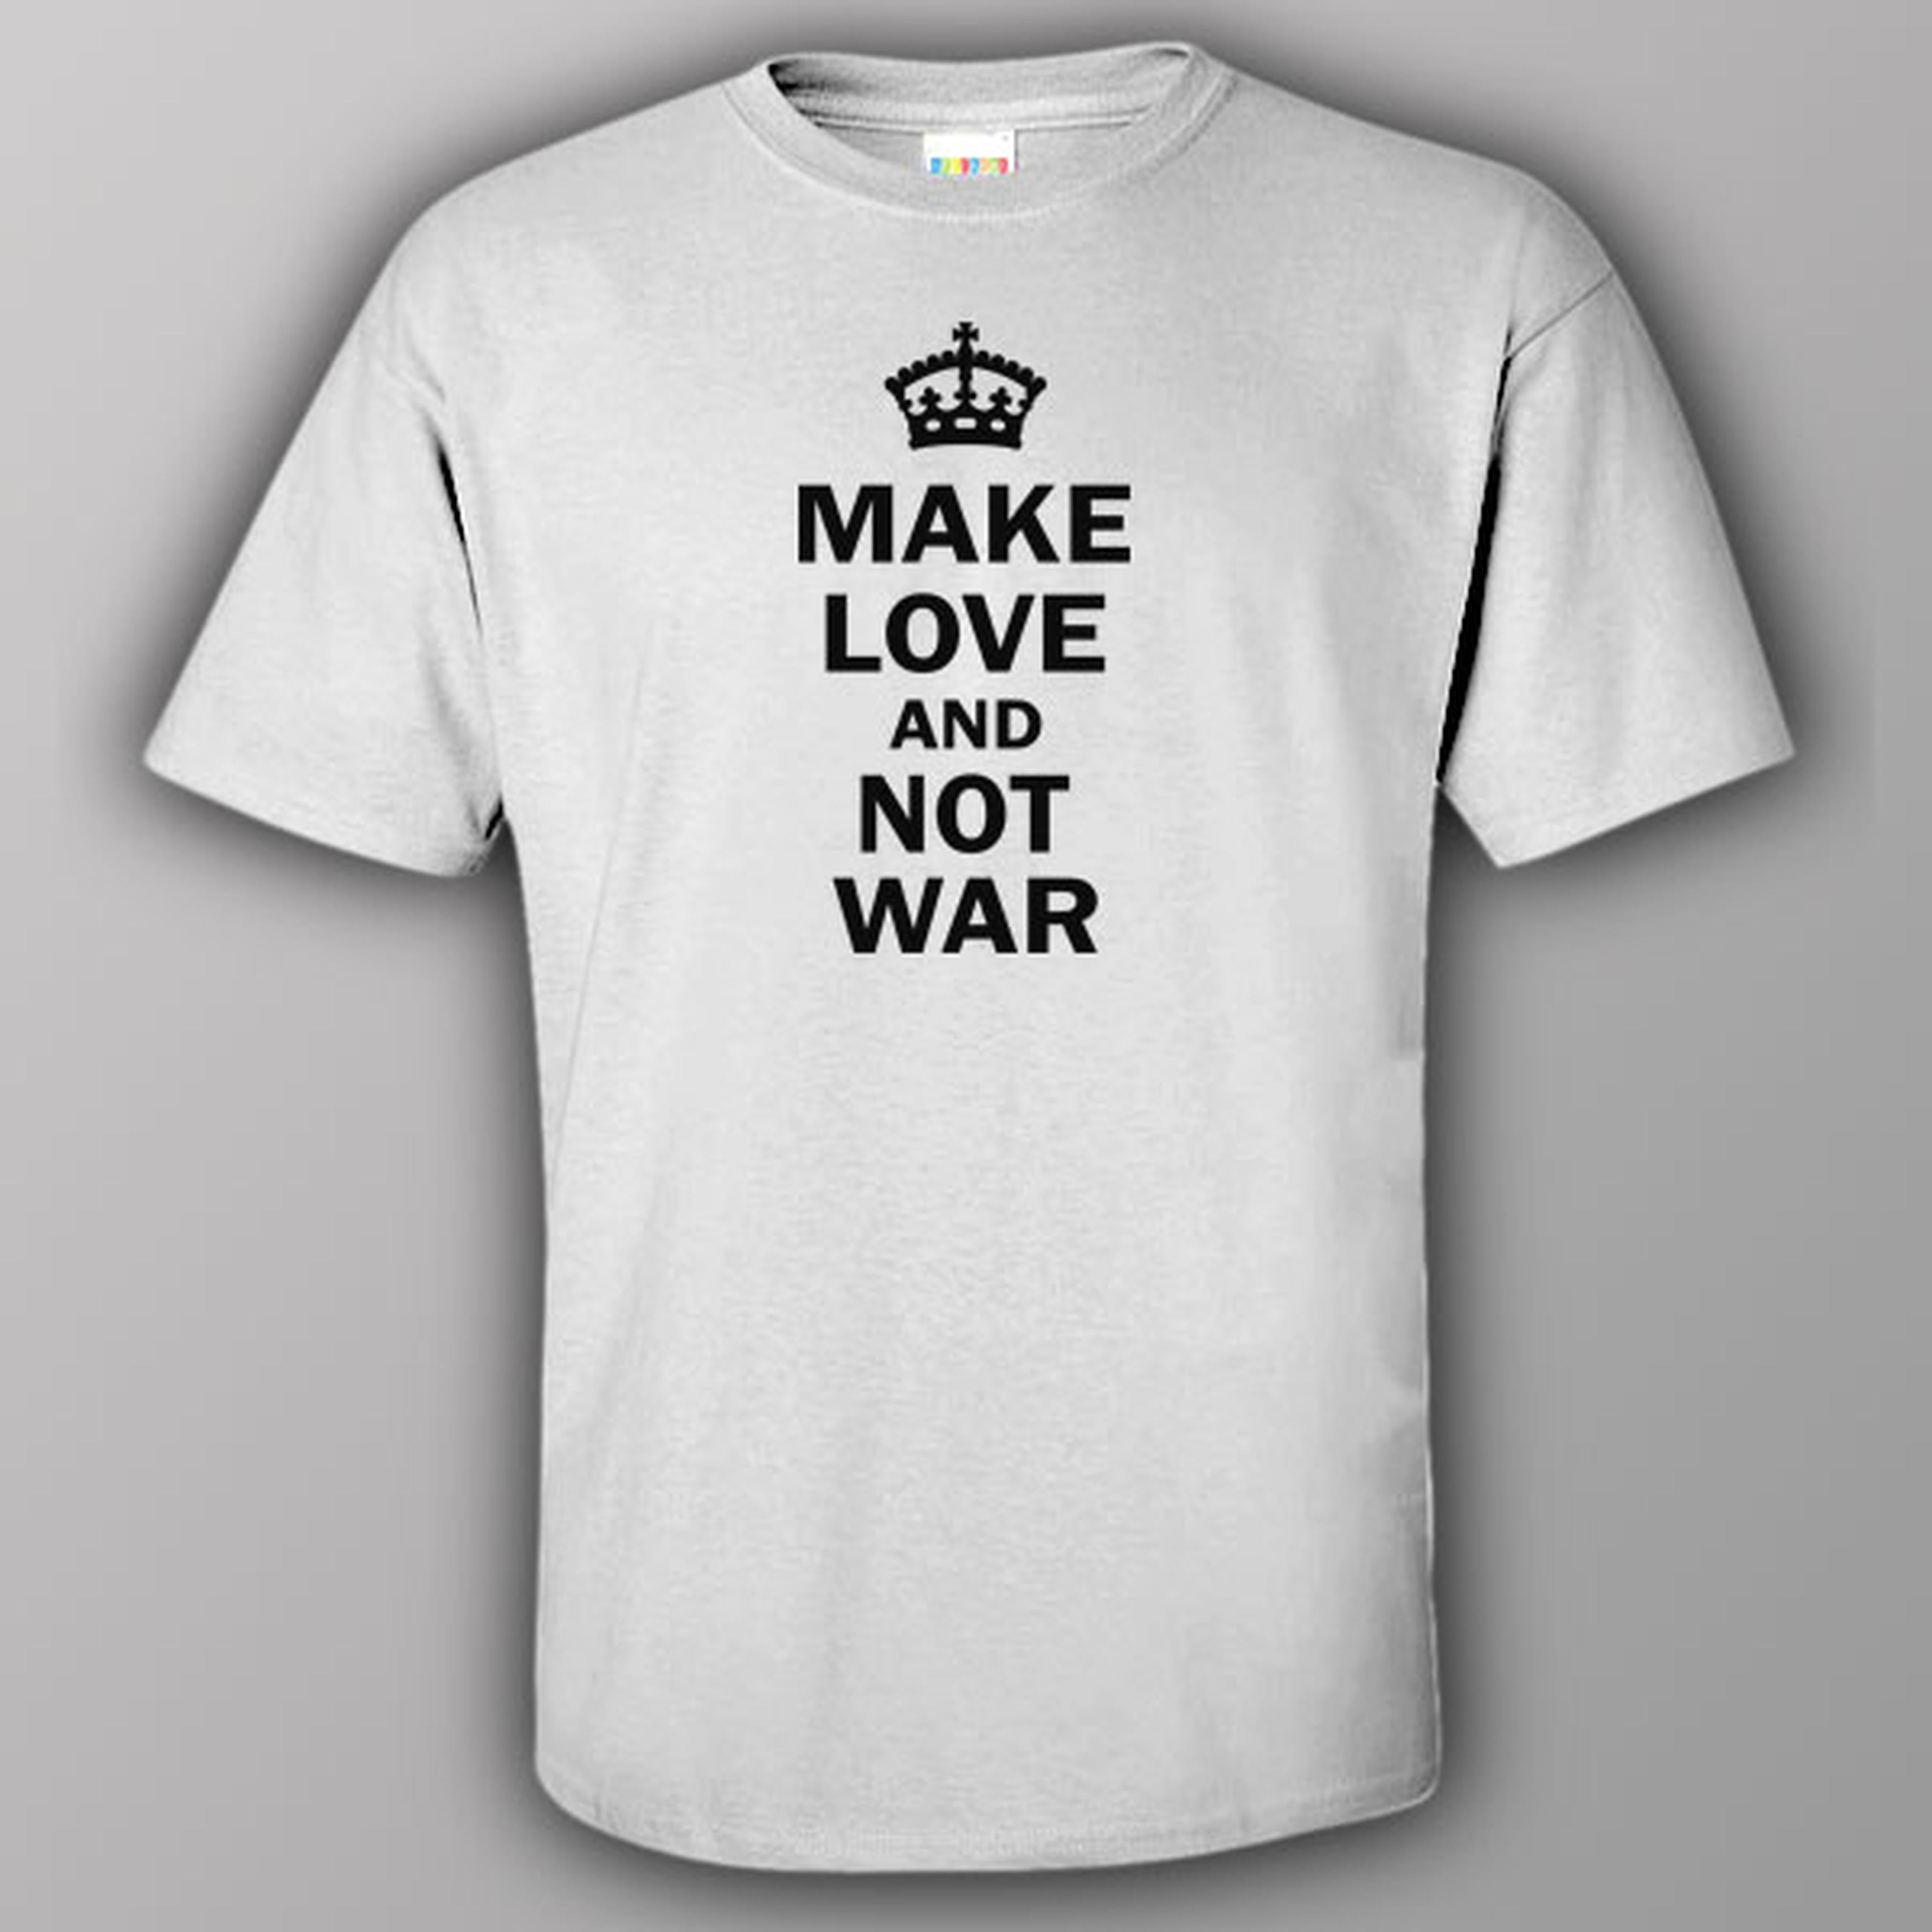 Make love and not war - T-shirt